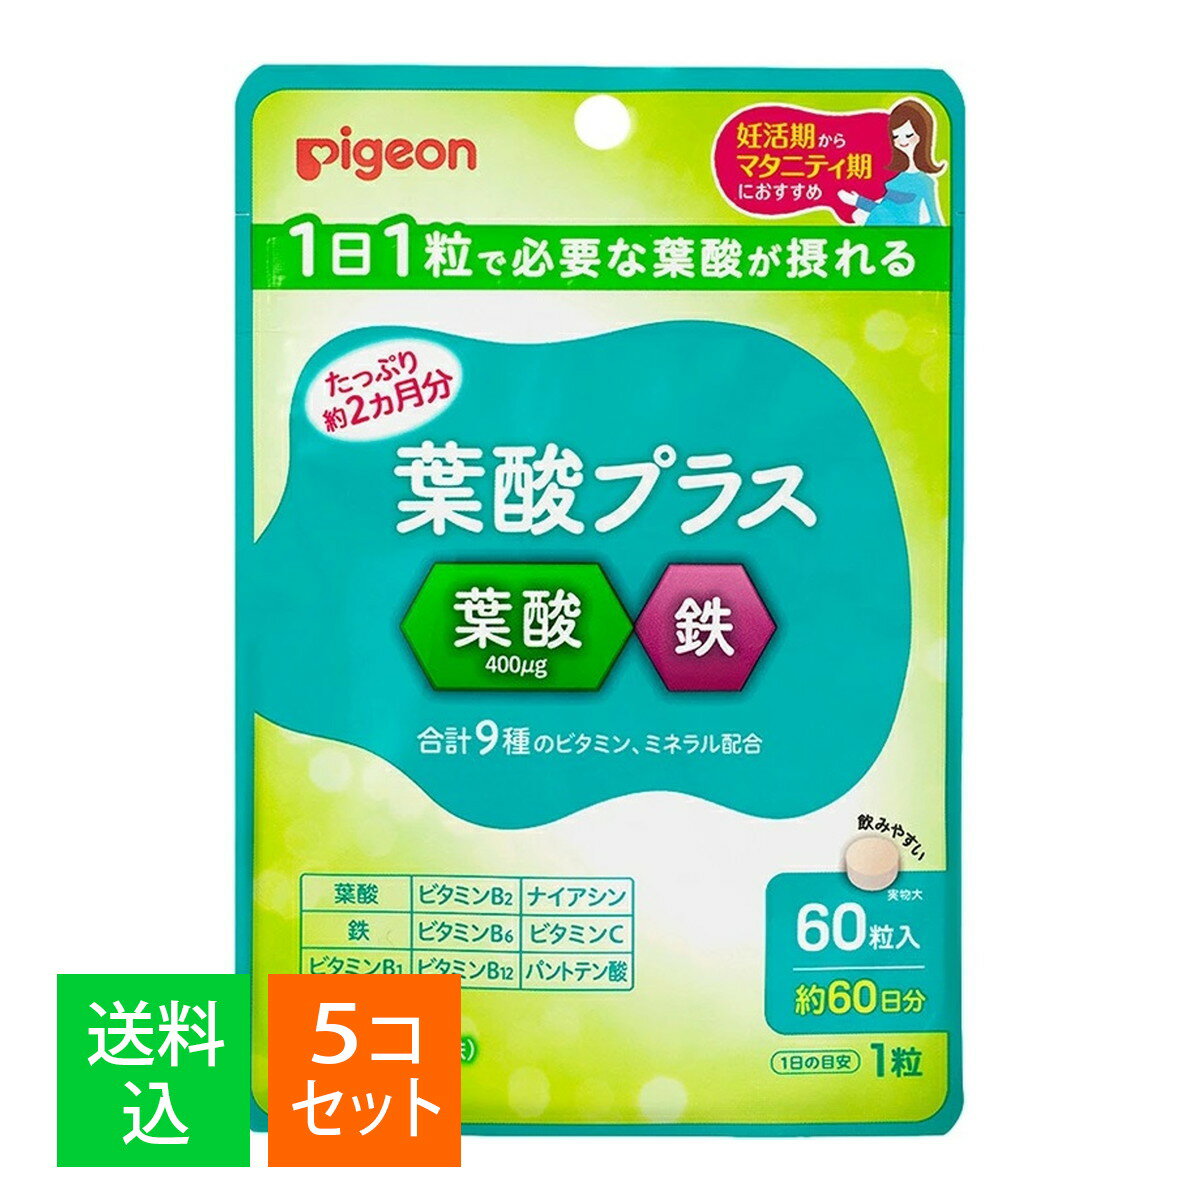 【×5袋セット メール便送料込】ピジョン 葉酸プラス 60粒入 栄養機能食品